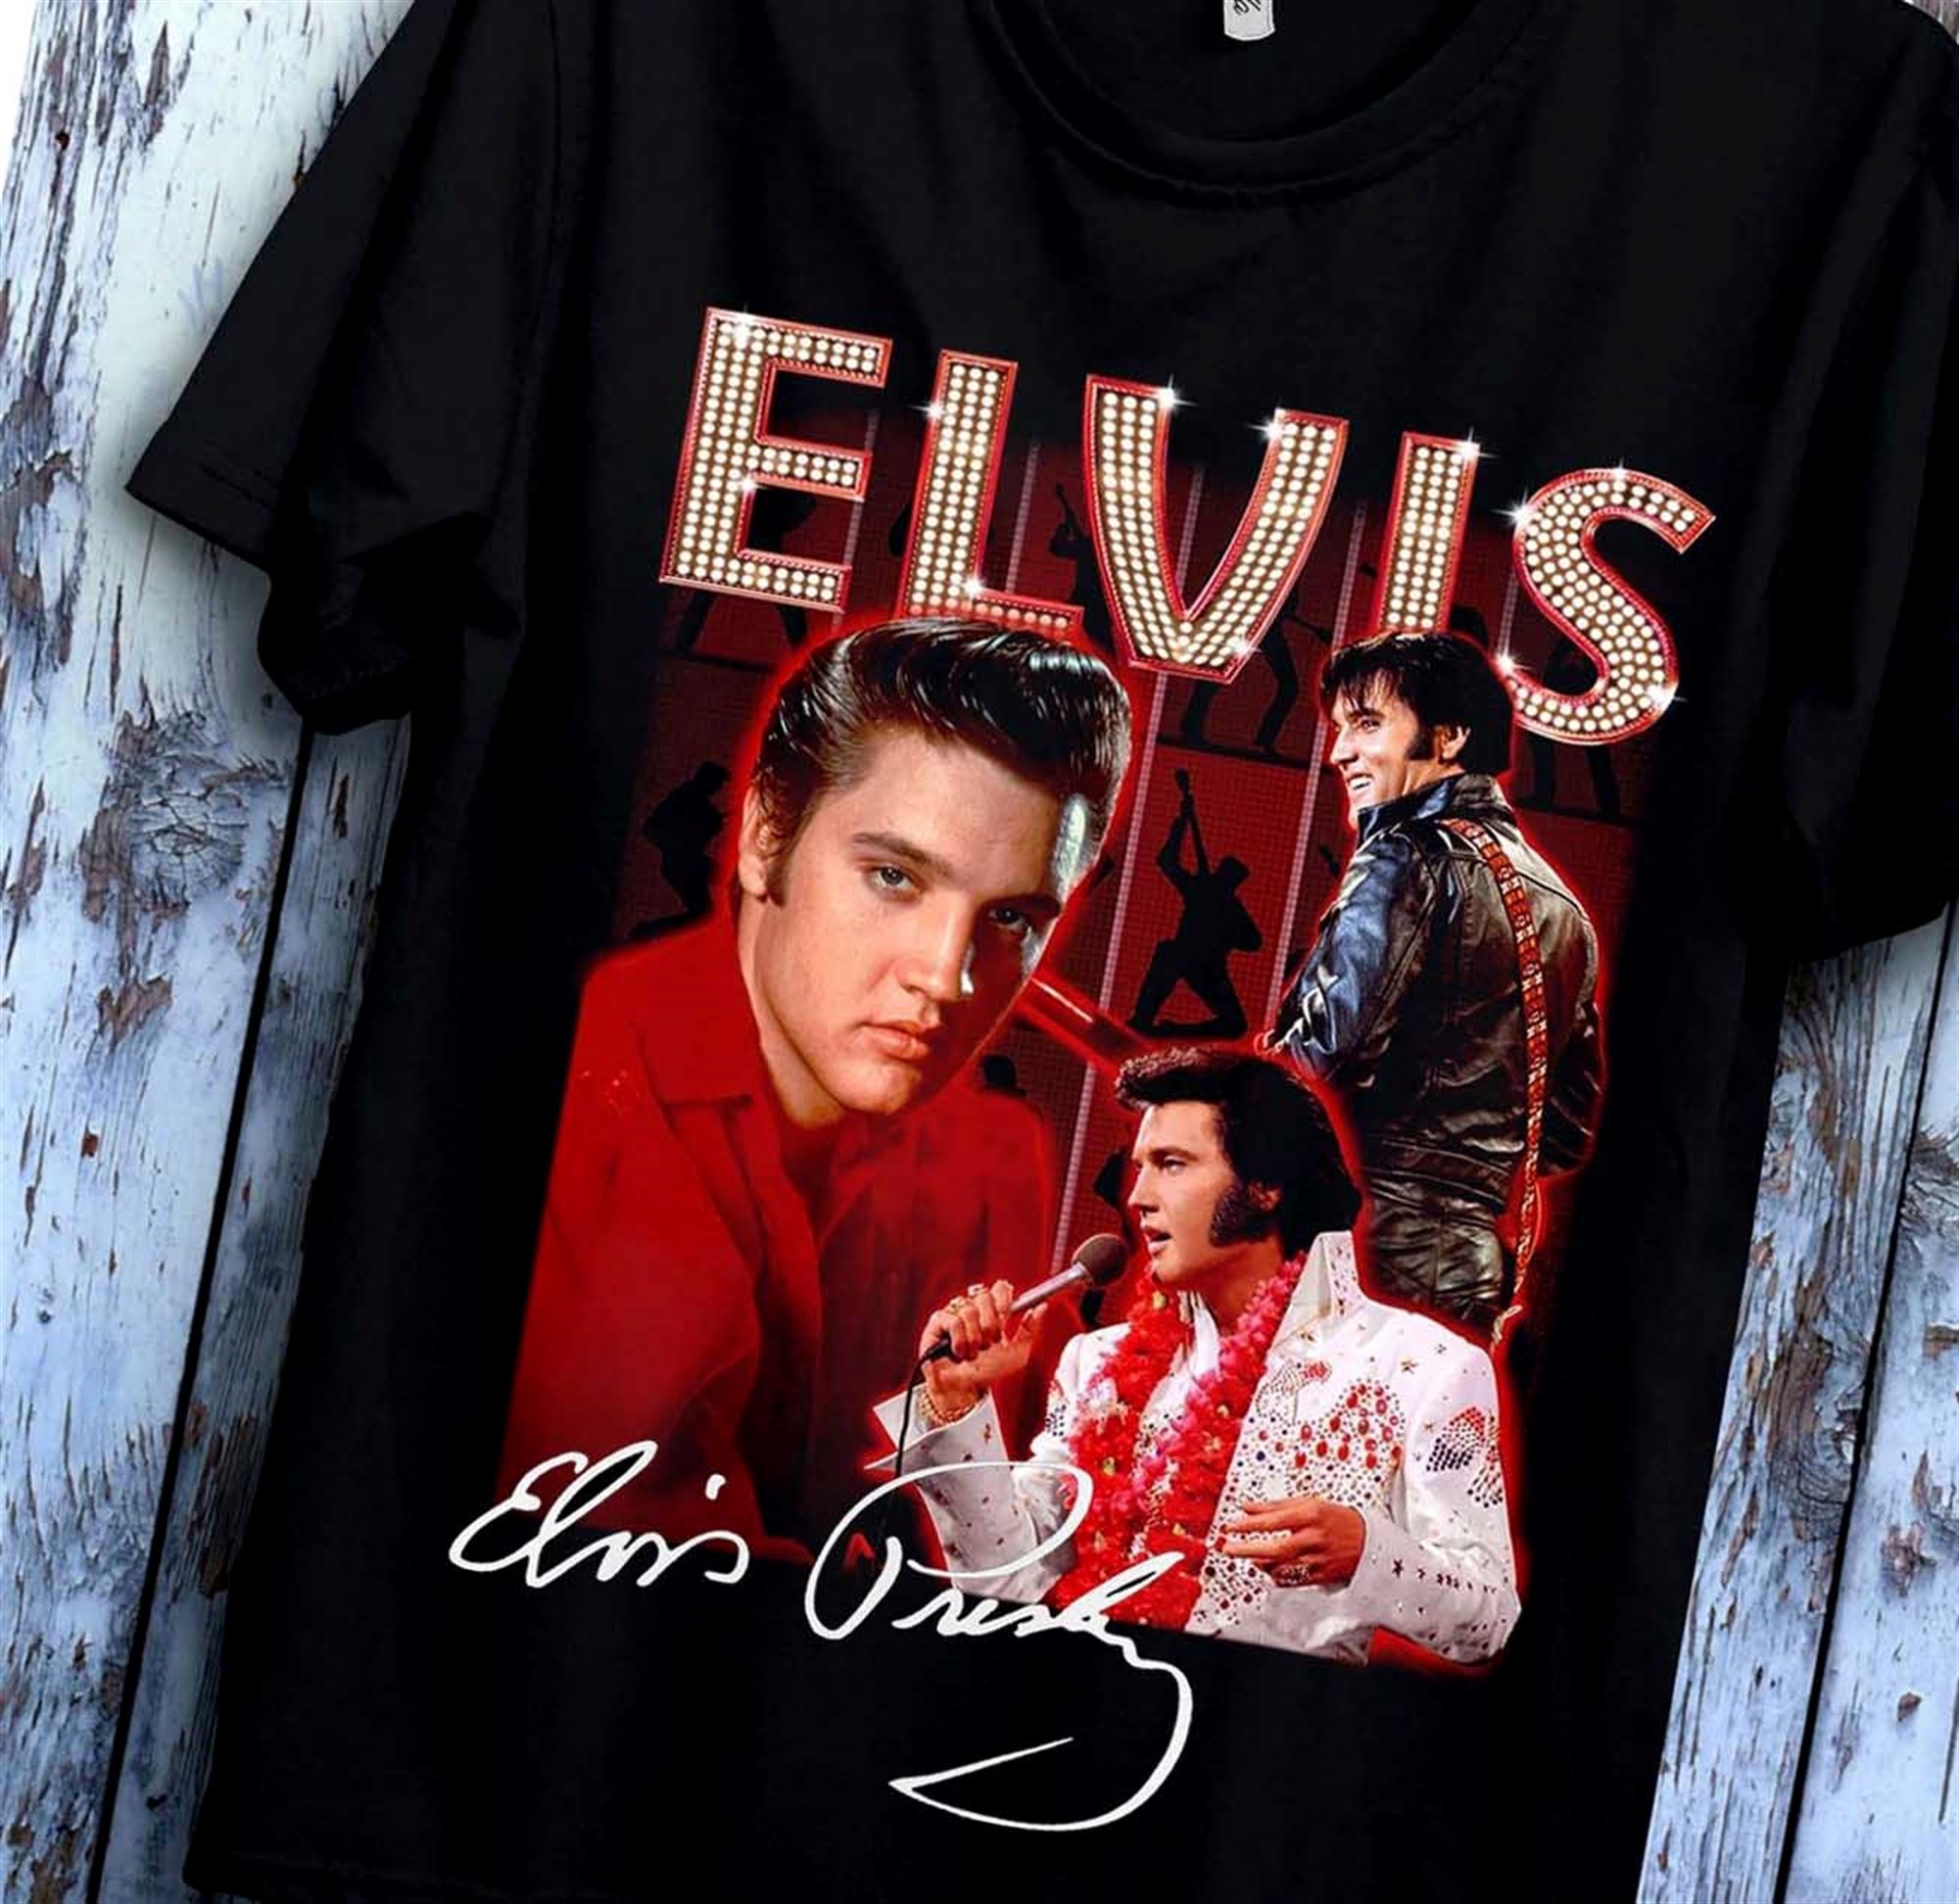 Elvis Presley Men's Rock N' Roll Crew Socks